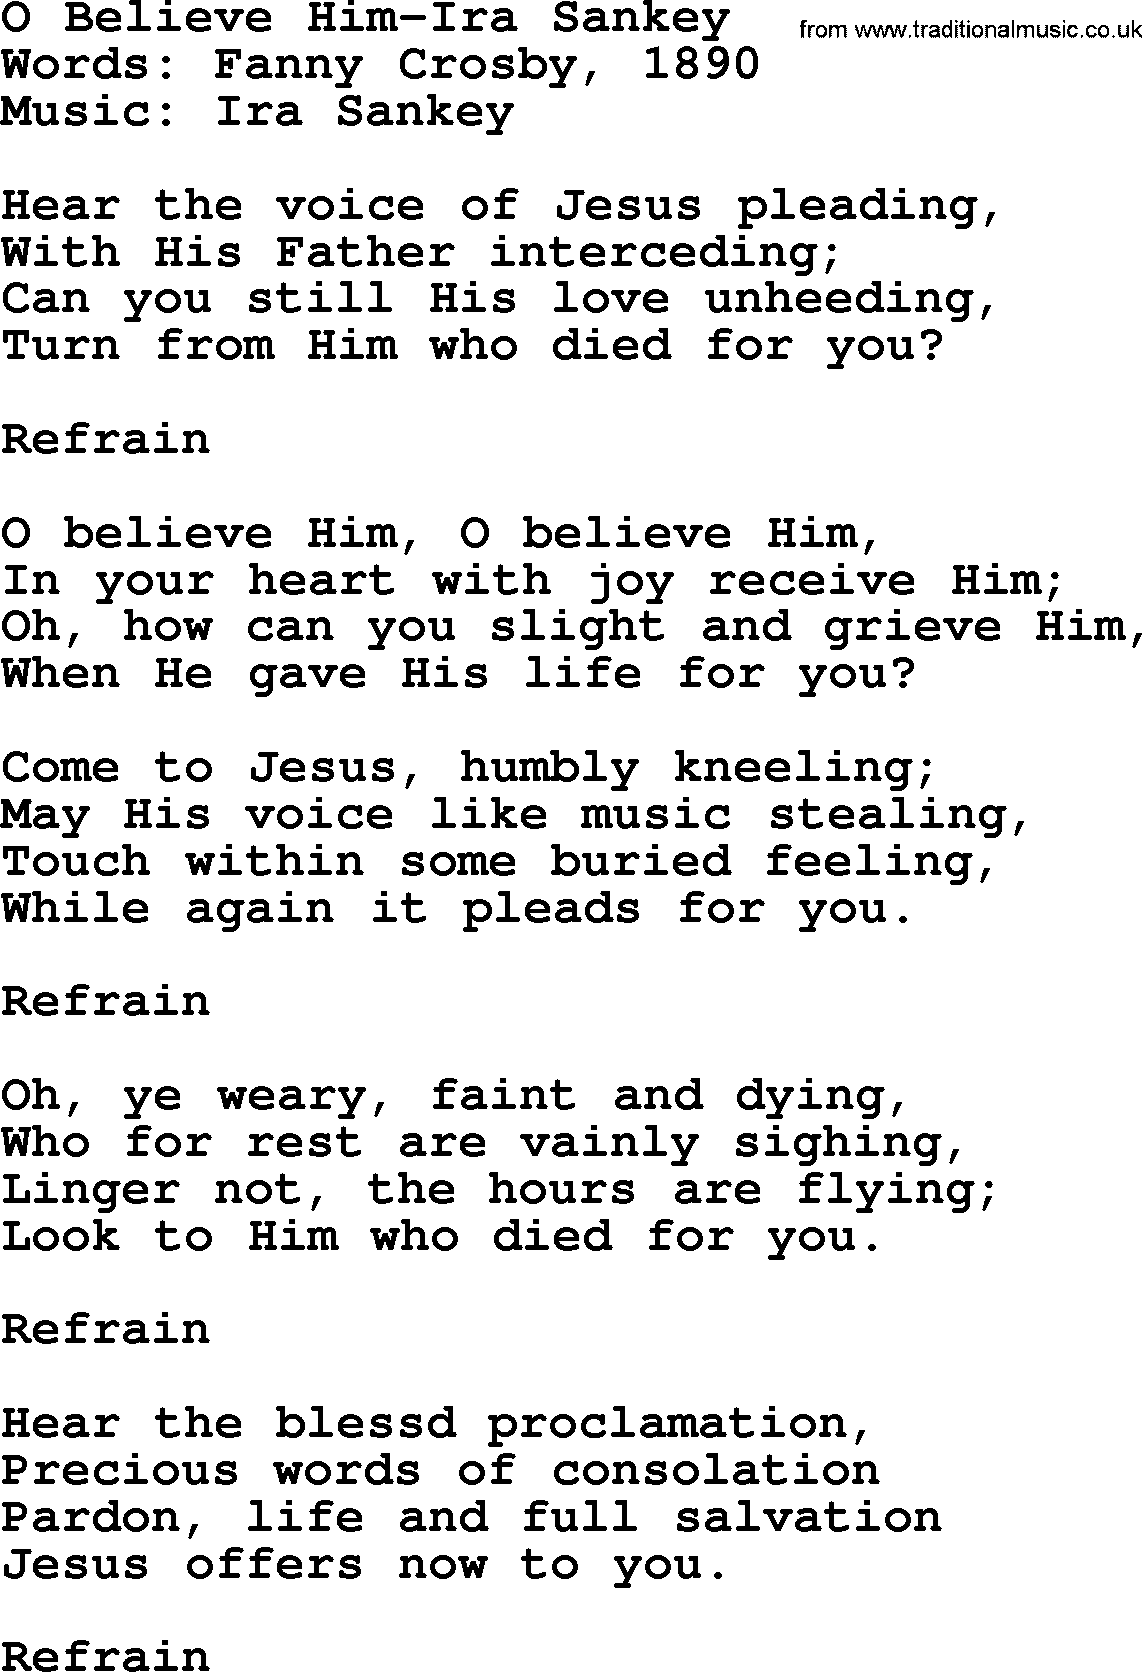 Ira Sankey hymn: O Believe Him-Ira Sankey, lyrics